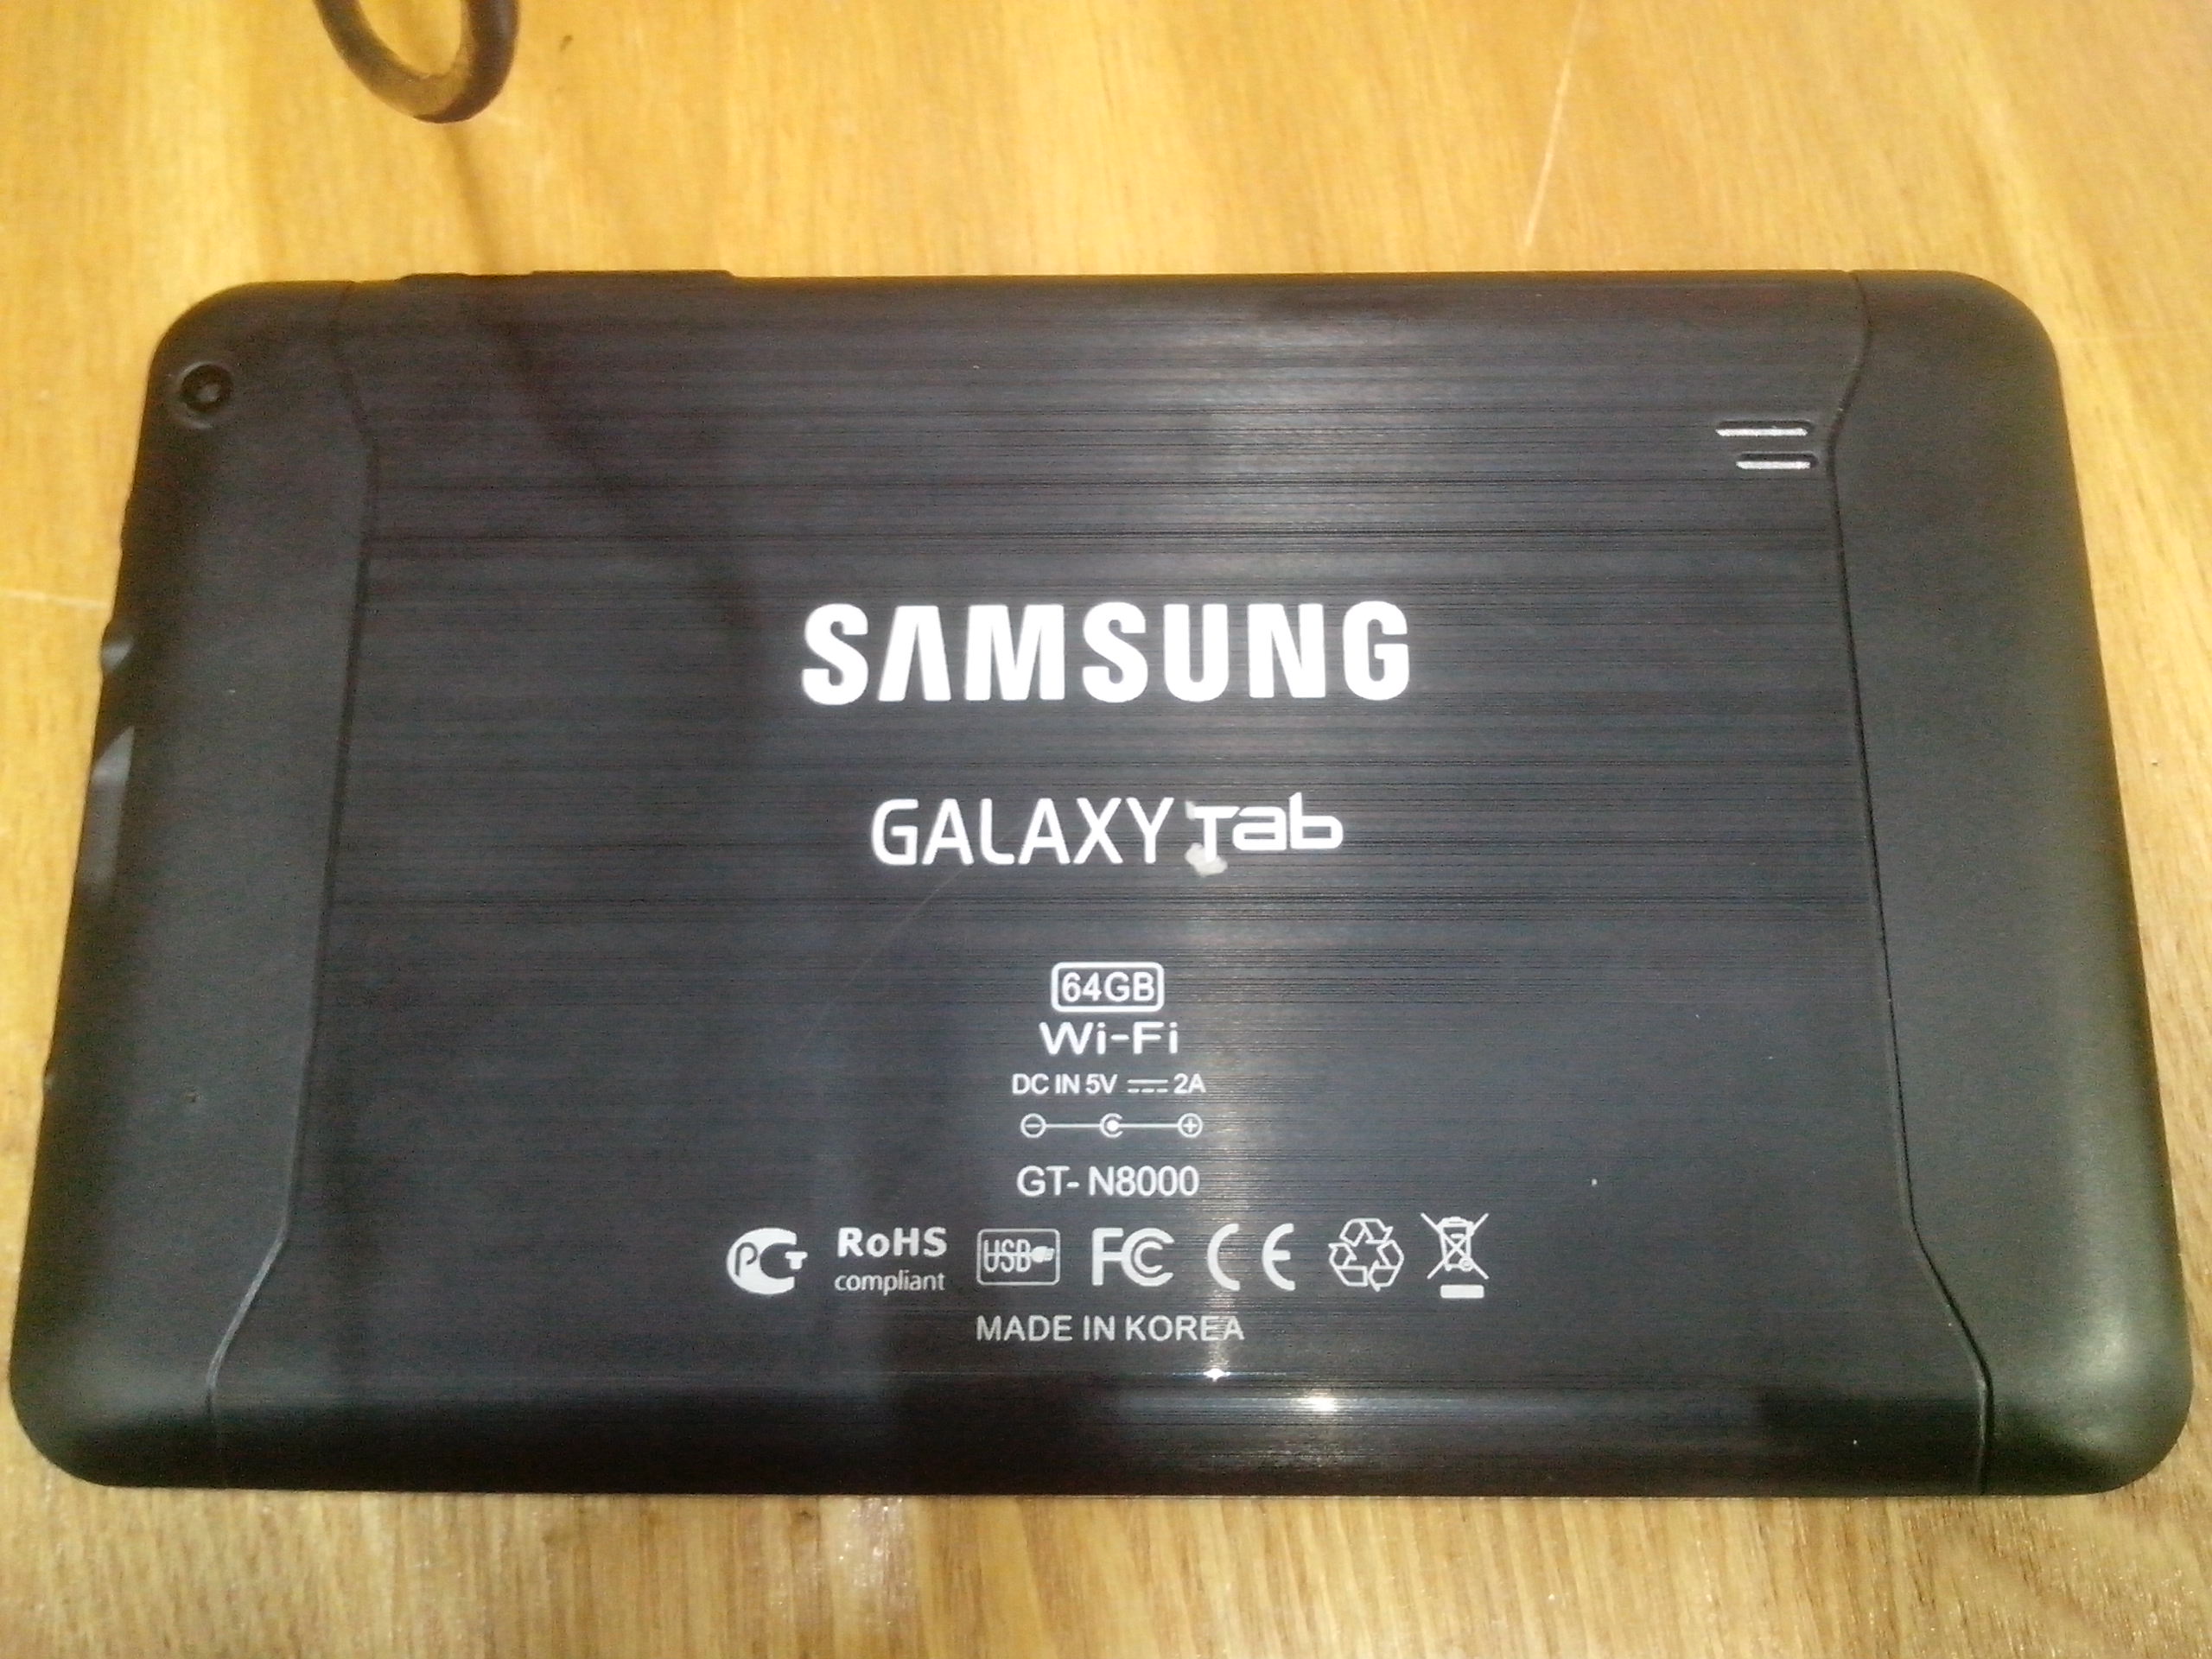 Планшет Самсунг Galaxy N8000